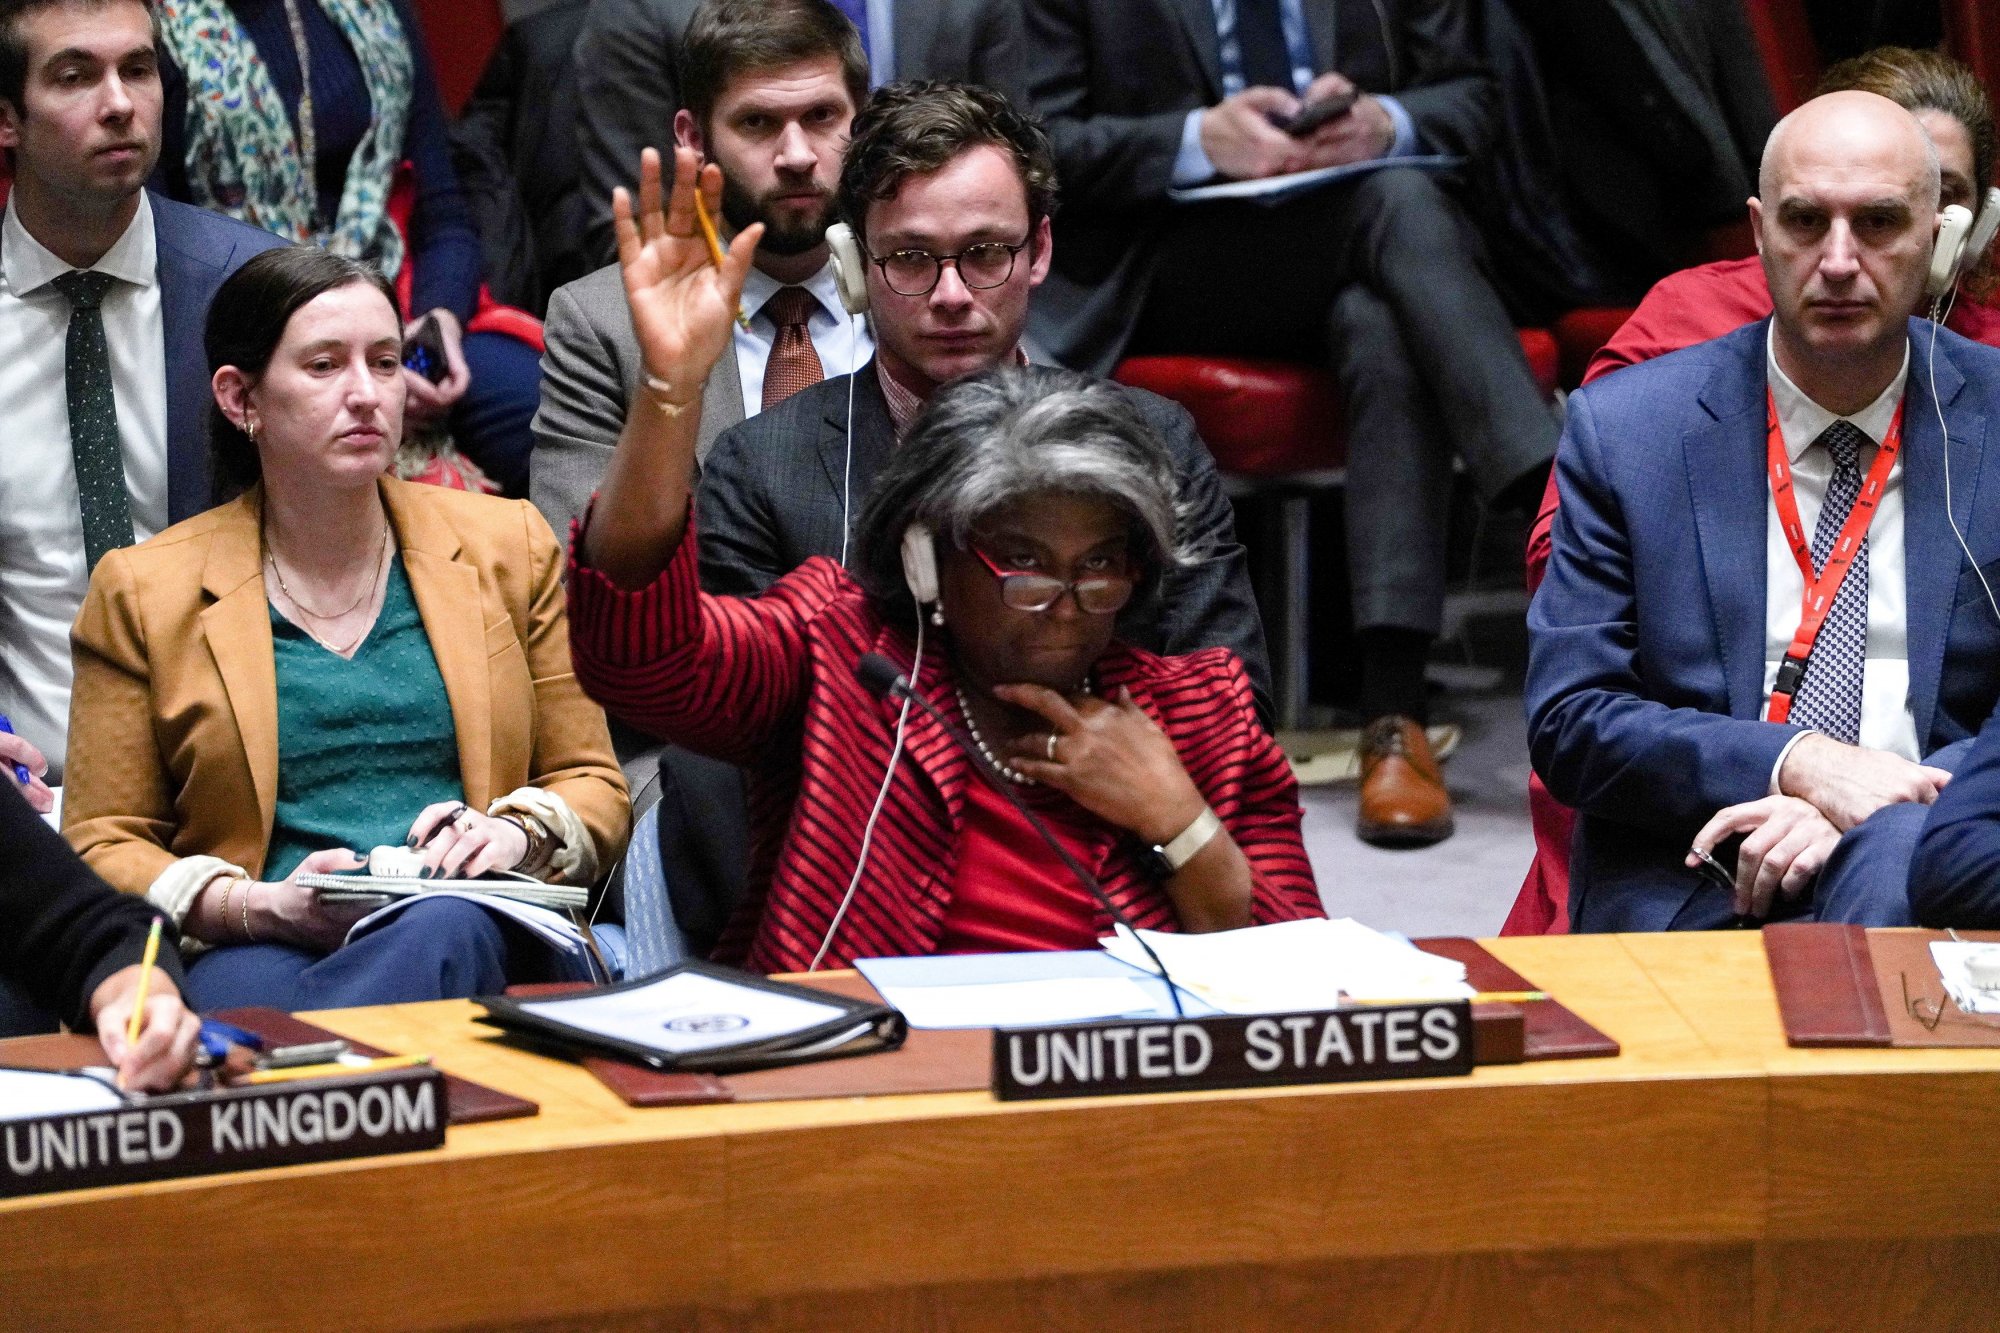 ΟΗΕ: Οι αντιδράσεις για το άτολμο ψήφισμα είναι πολλές και κάποιες ιδιαίτερα αιχμηρές